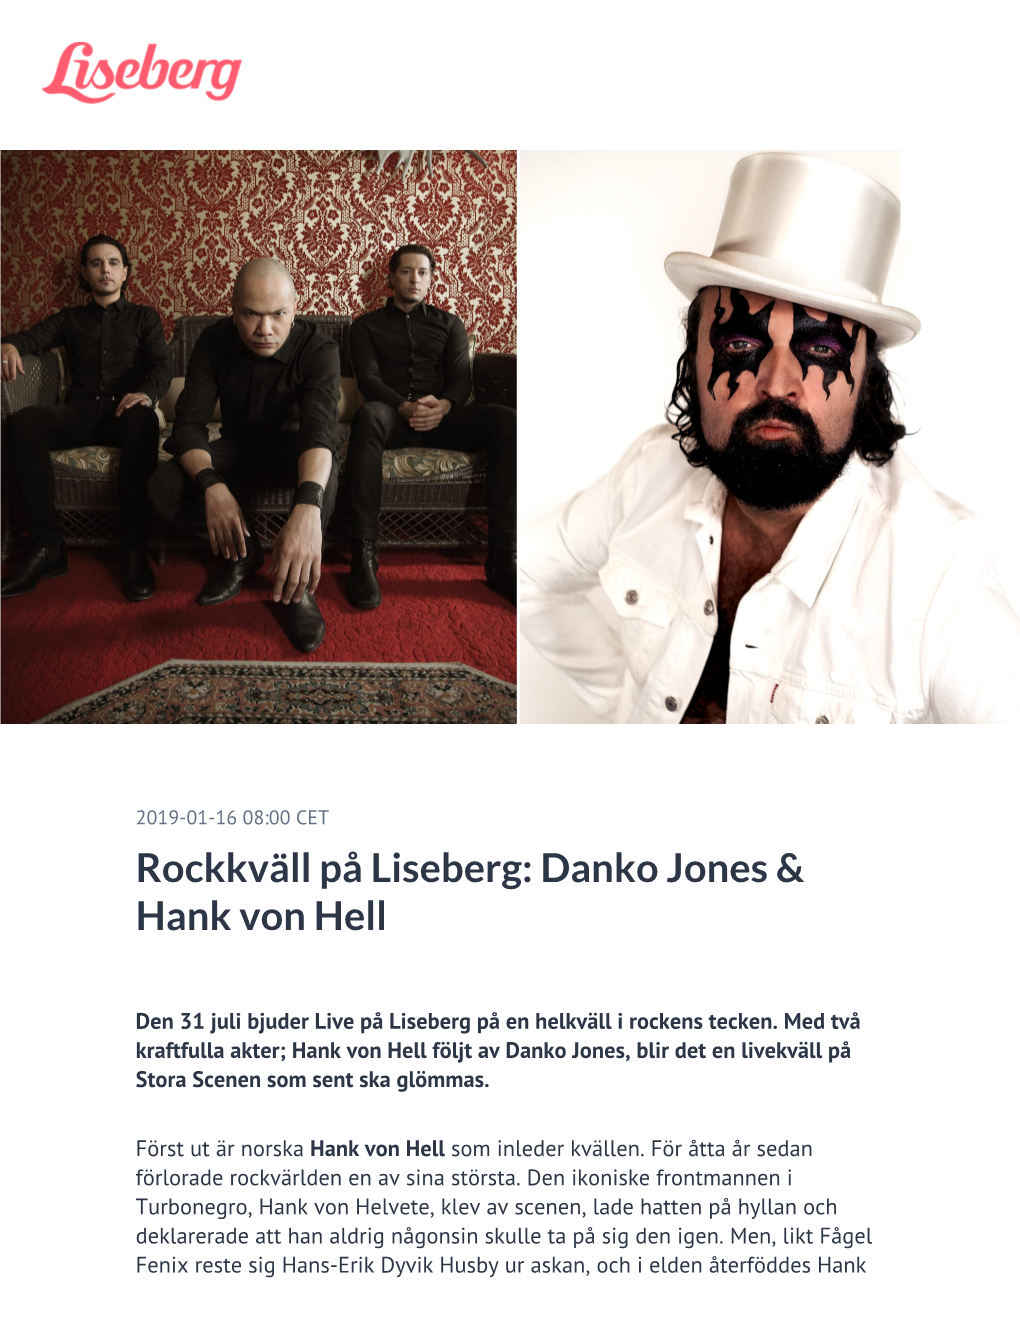 Danko Jones & Hank Von Hell